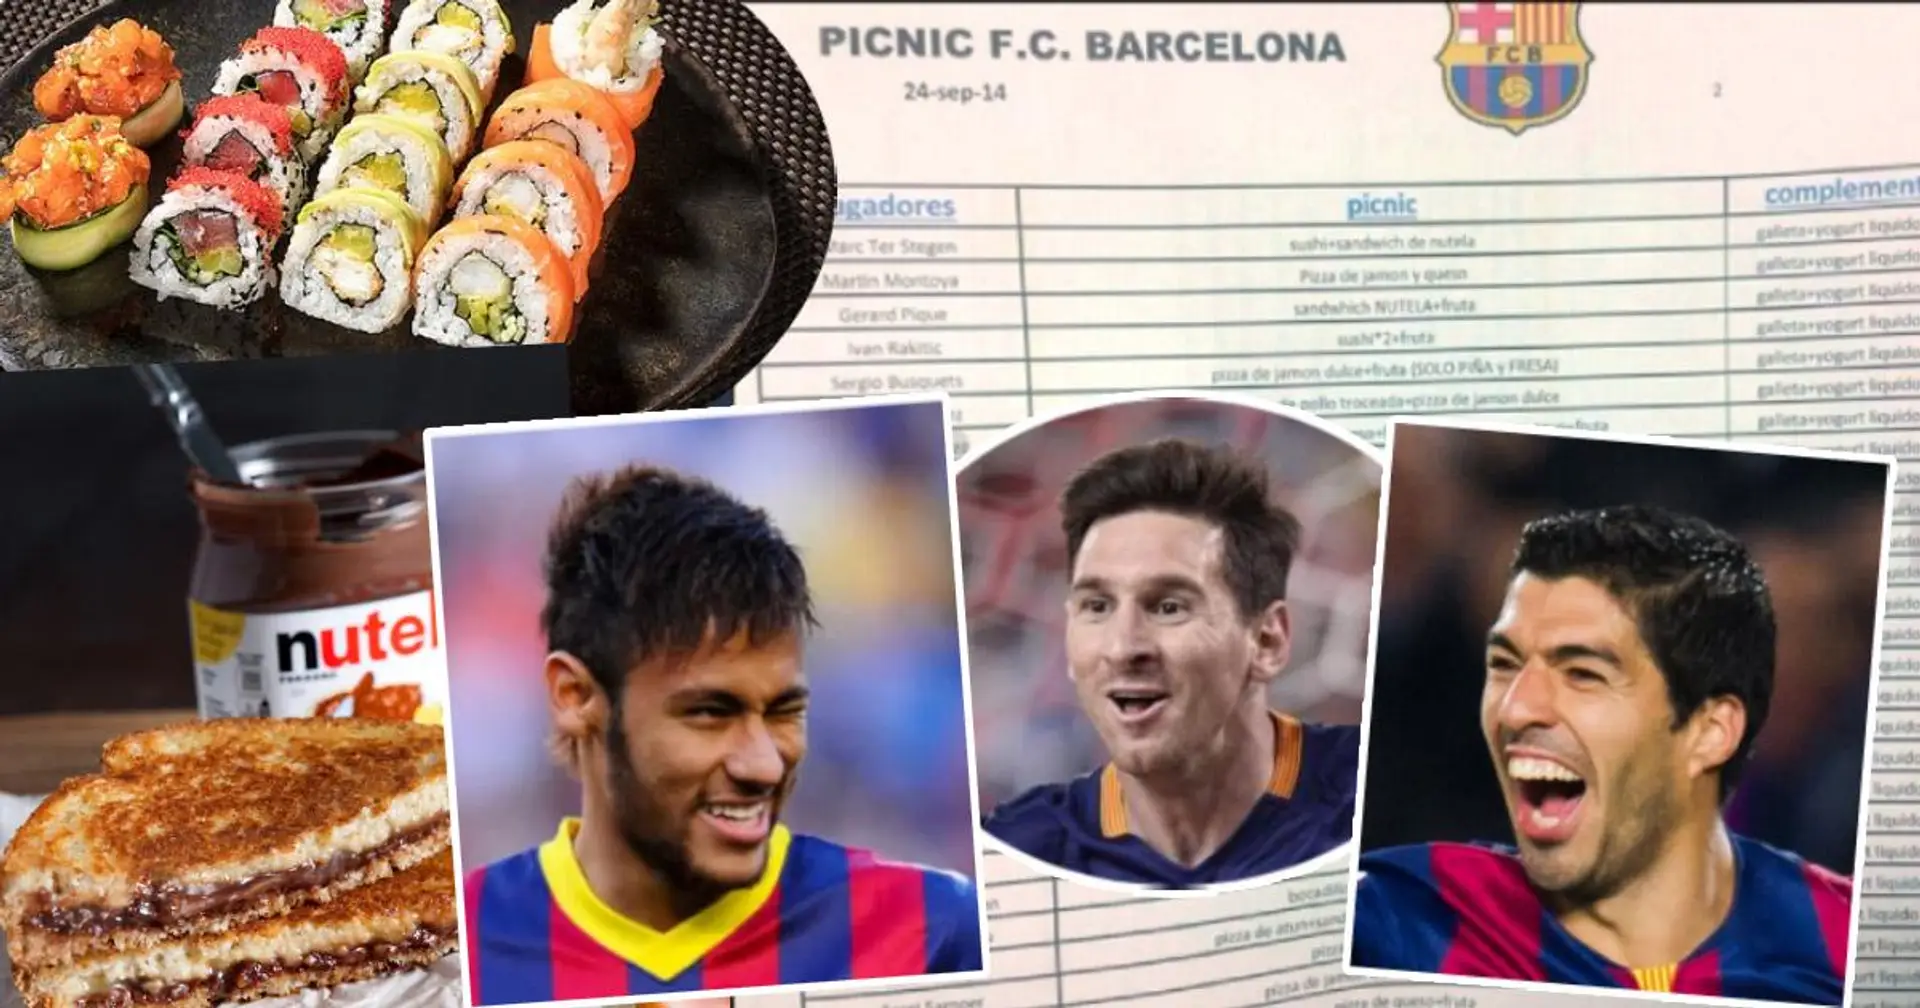 Pizza au fromage pour Messi, sandwich au Nutella pour Ter Stegen : Une liste de 2014 montre les habitudes alimentaires des joueurs du Barça